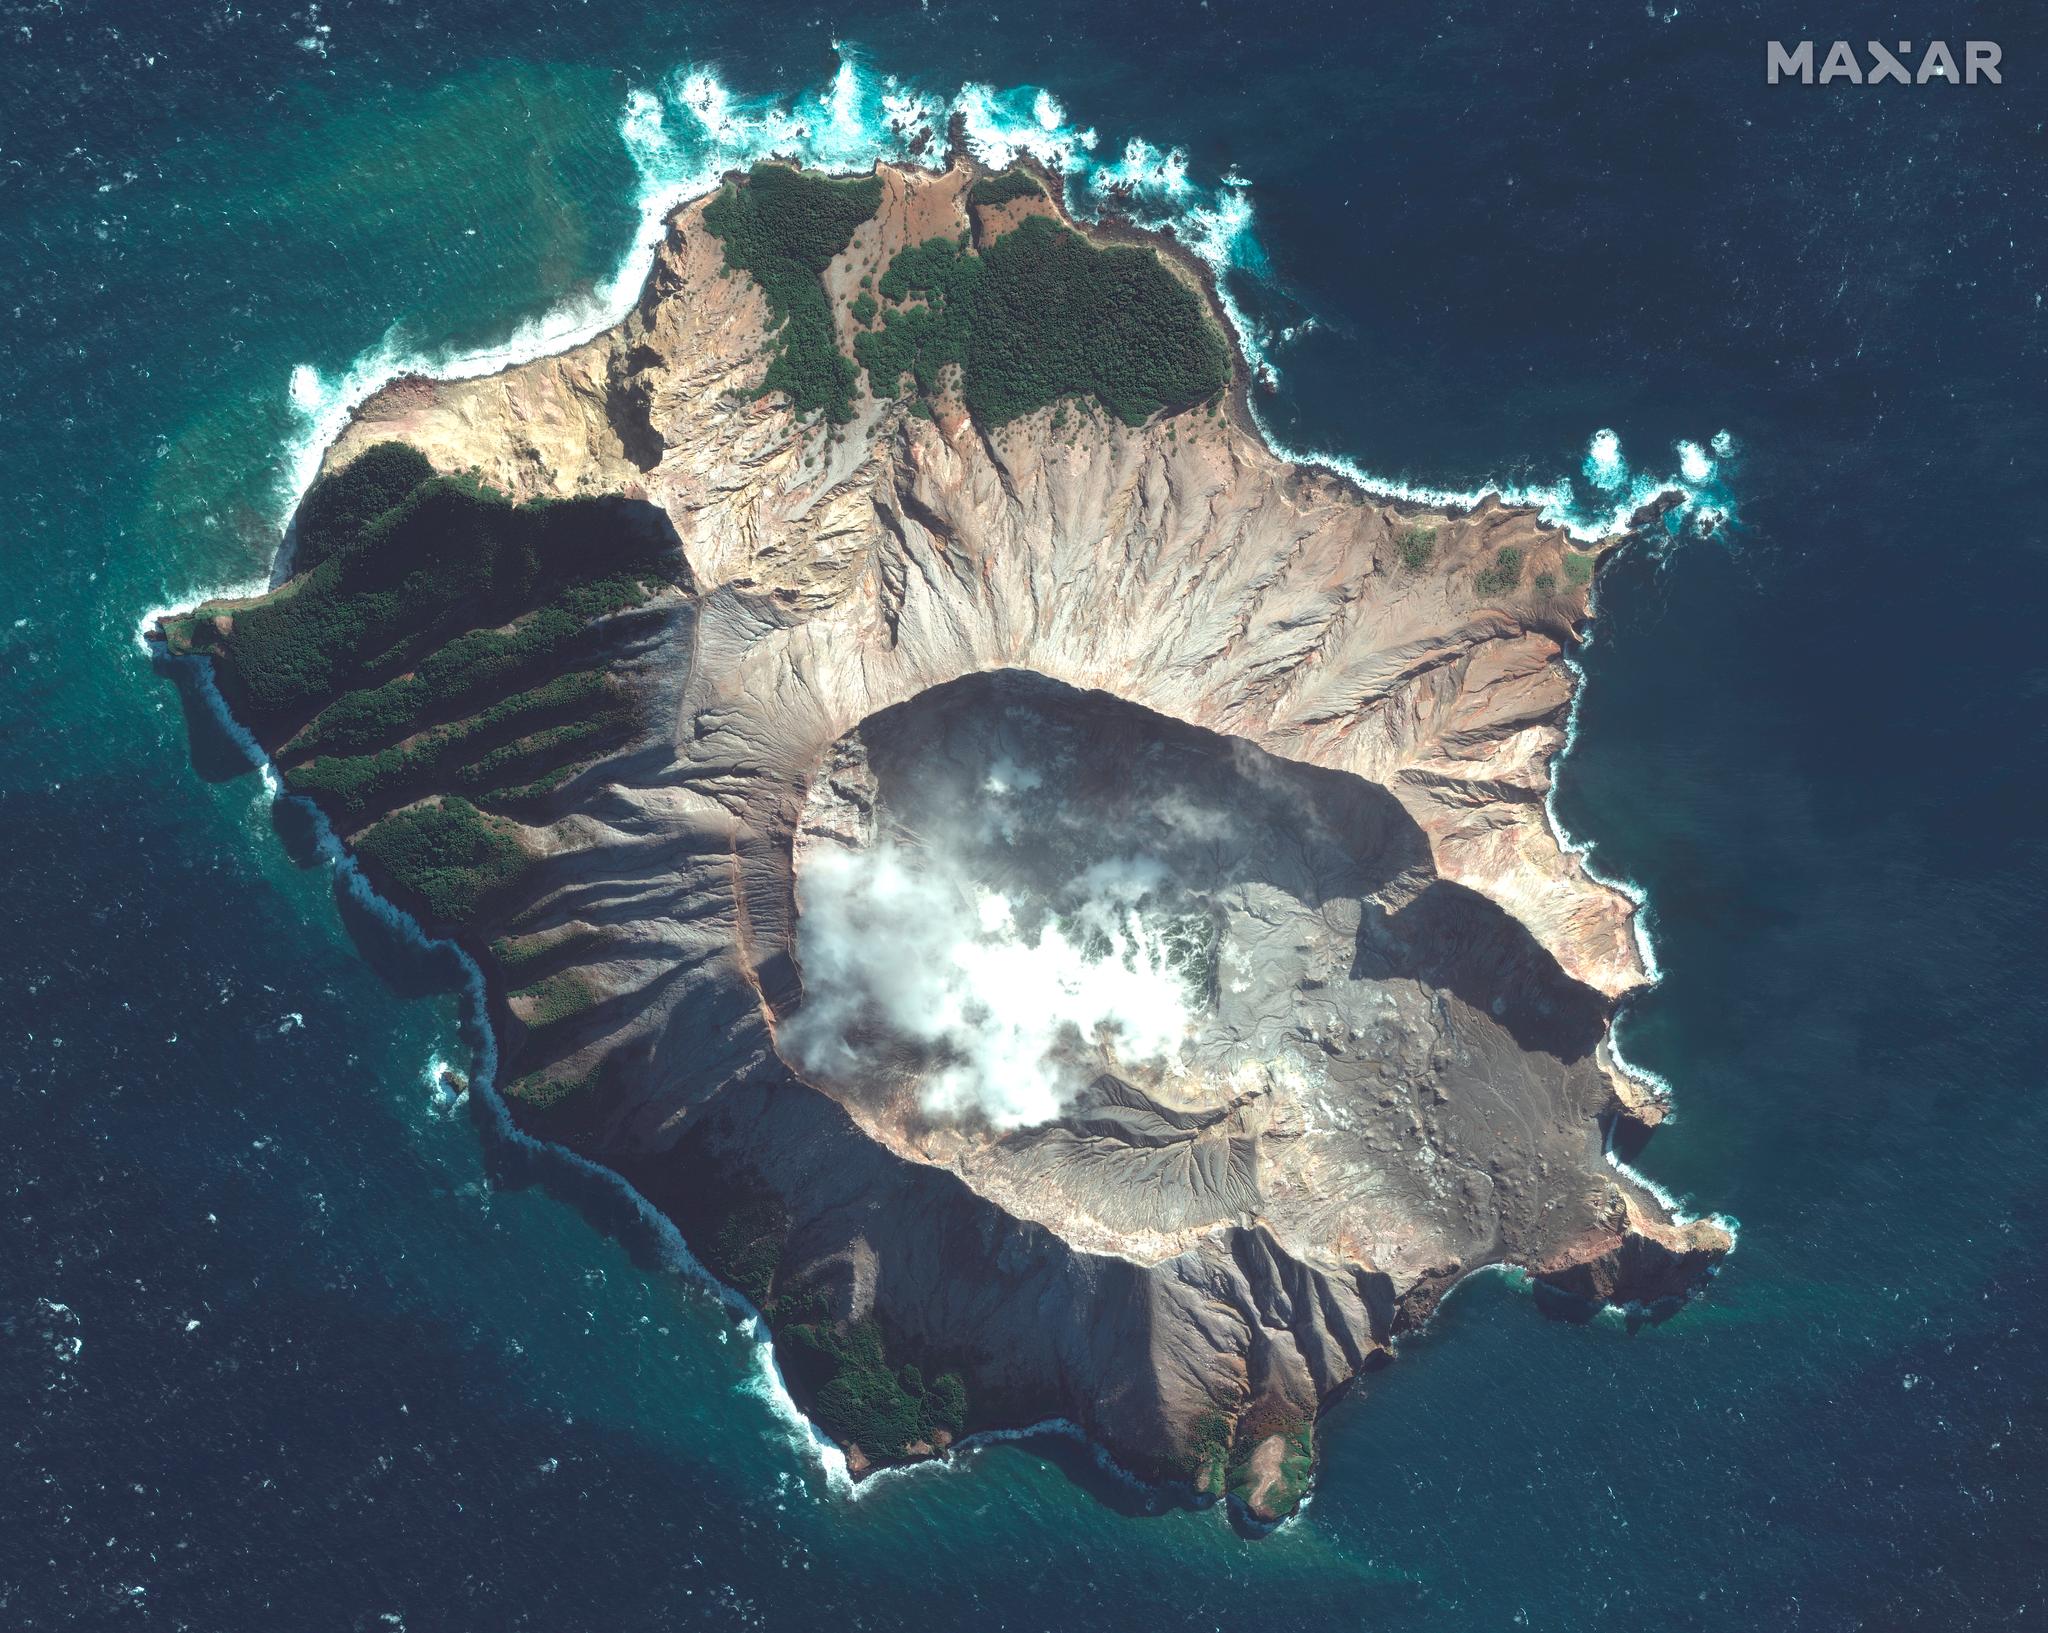 Satellittbilde av Whakaari-øya tatt 12. mai 2019 viser hvordan røyk og damp stiger opp fra øya. Den høye vulkanaktiviteten gjorde øya til et populært turistmål.